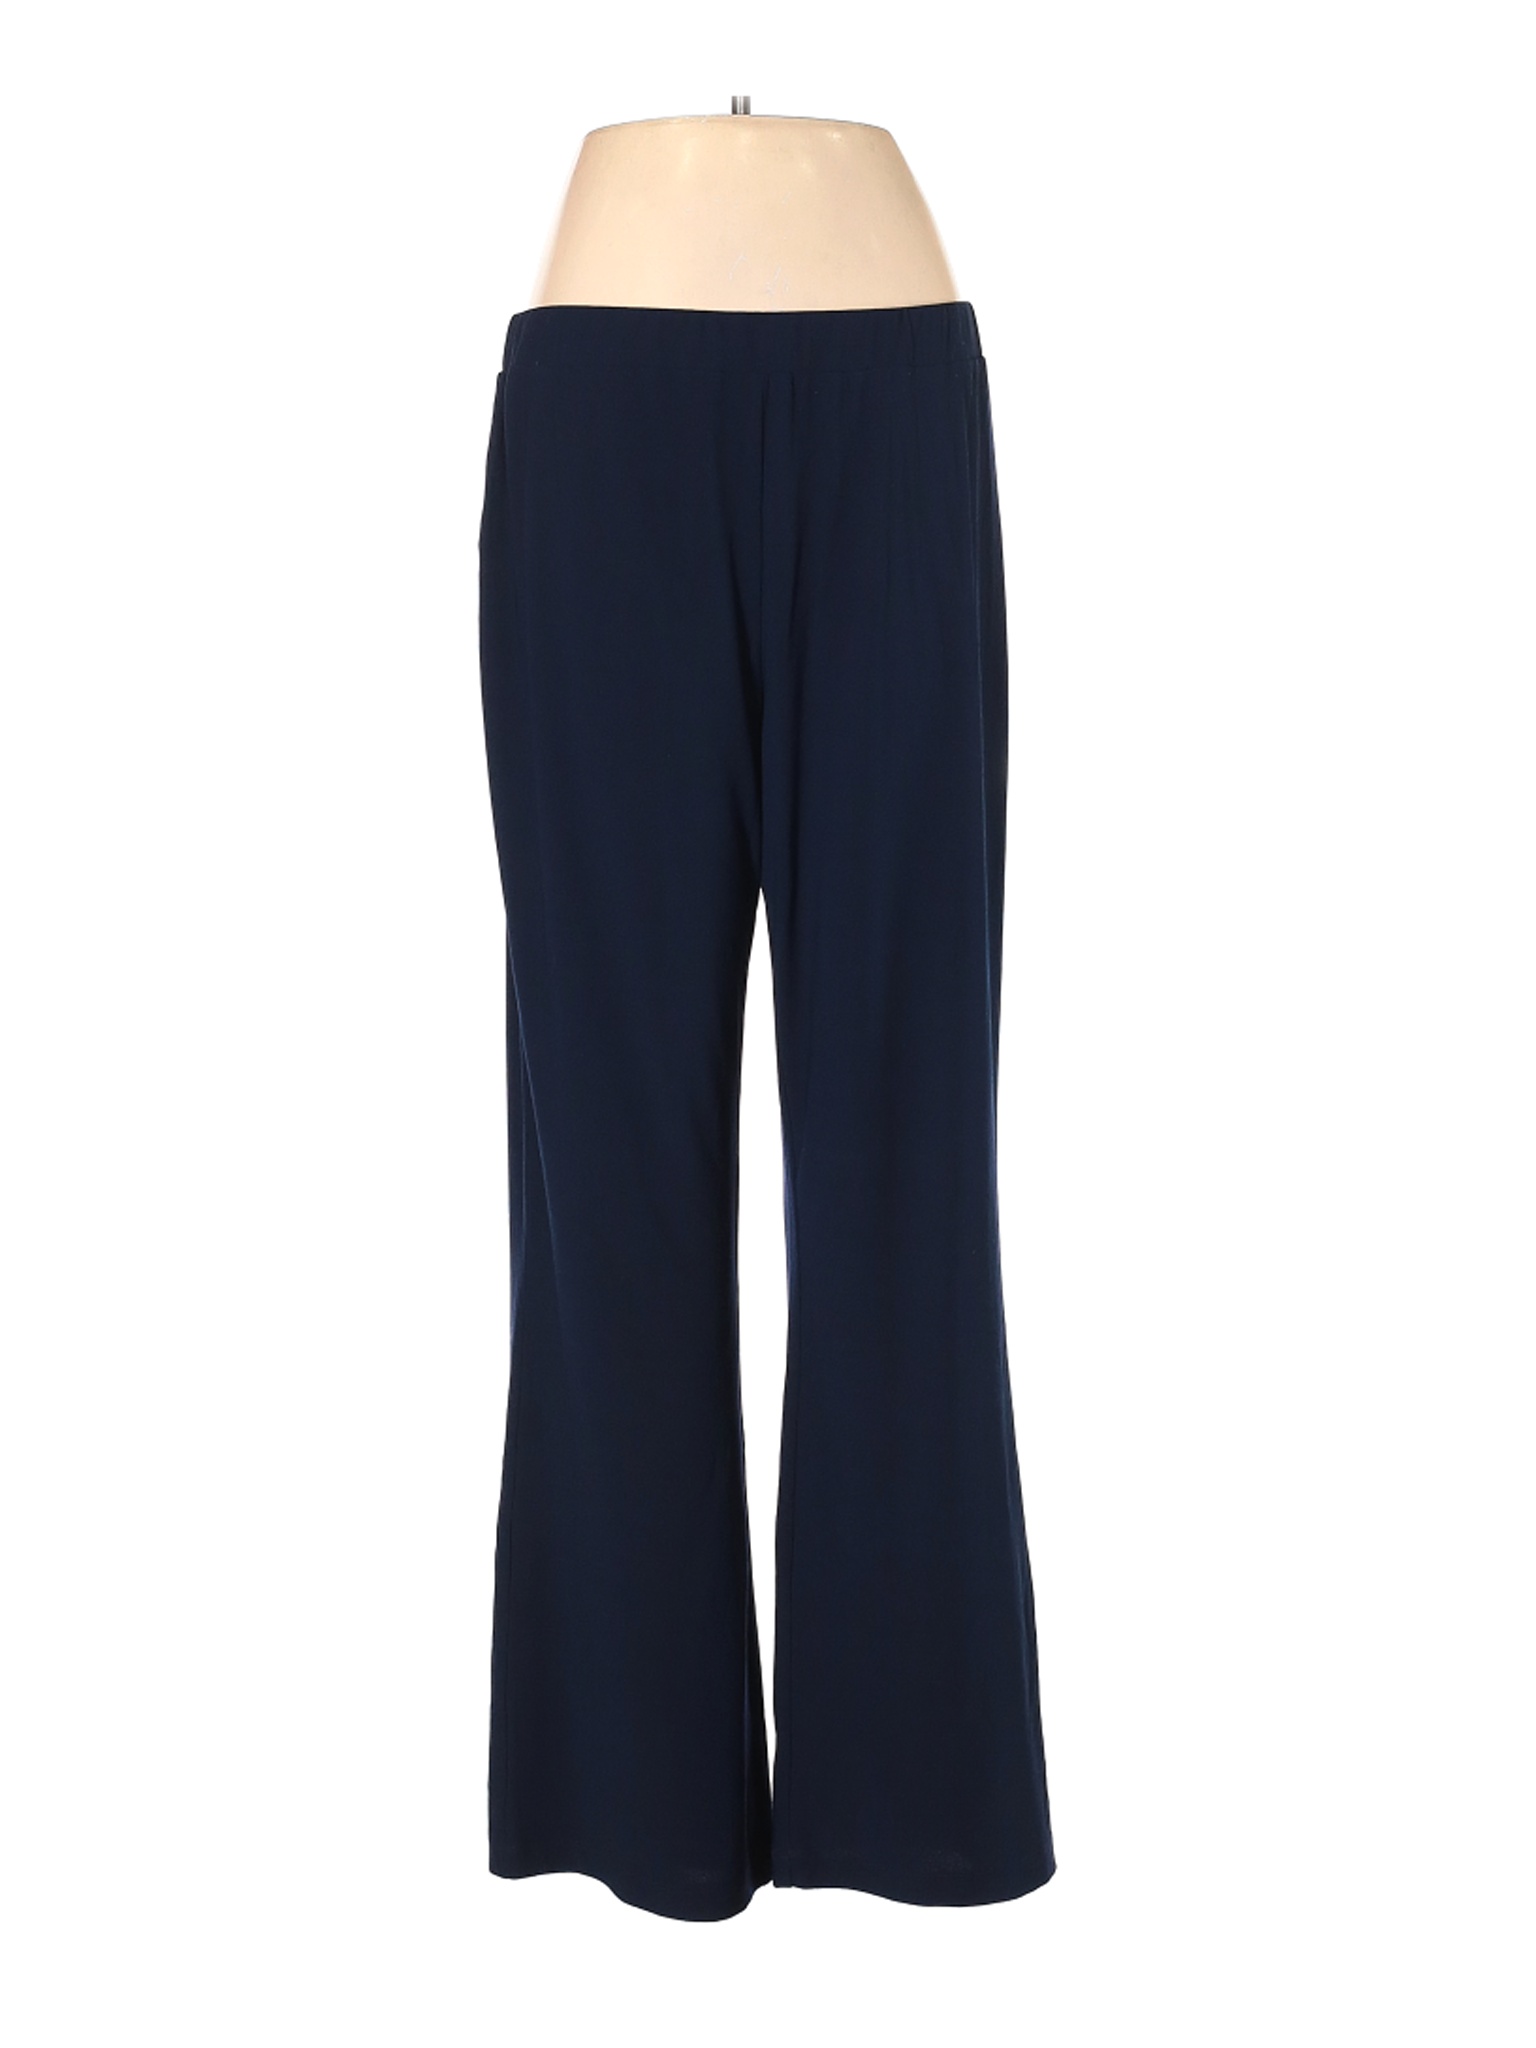 Susan Graver Women Blue Casual Pants M | eBay